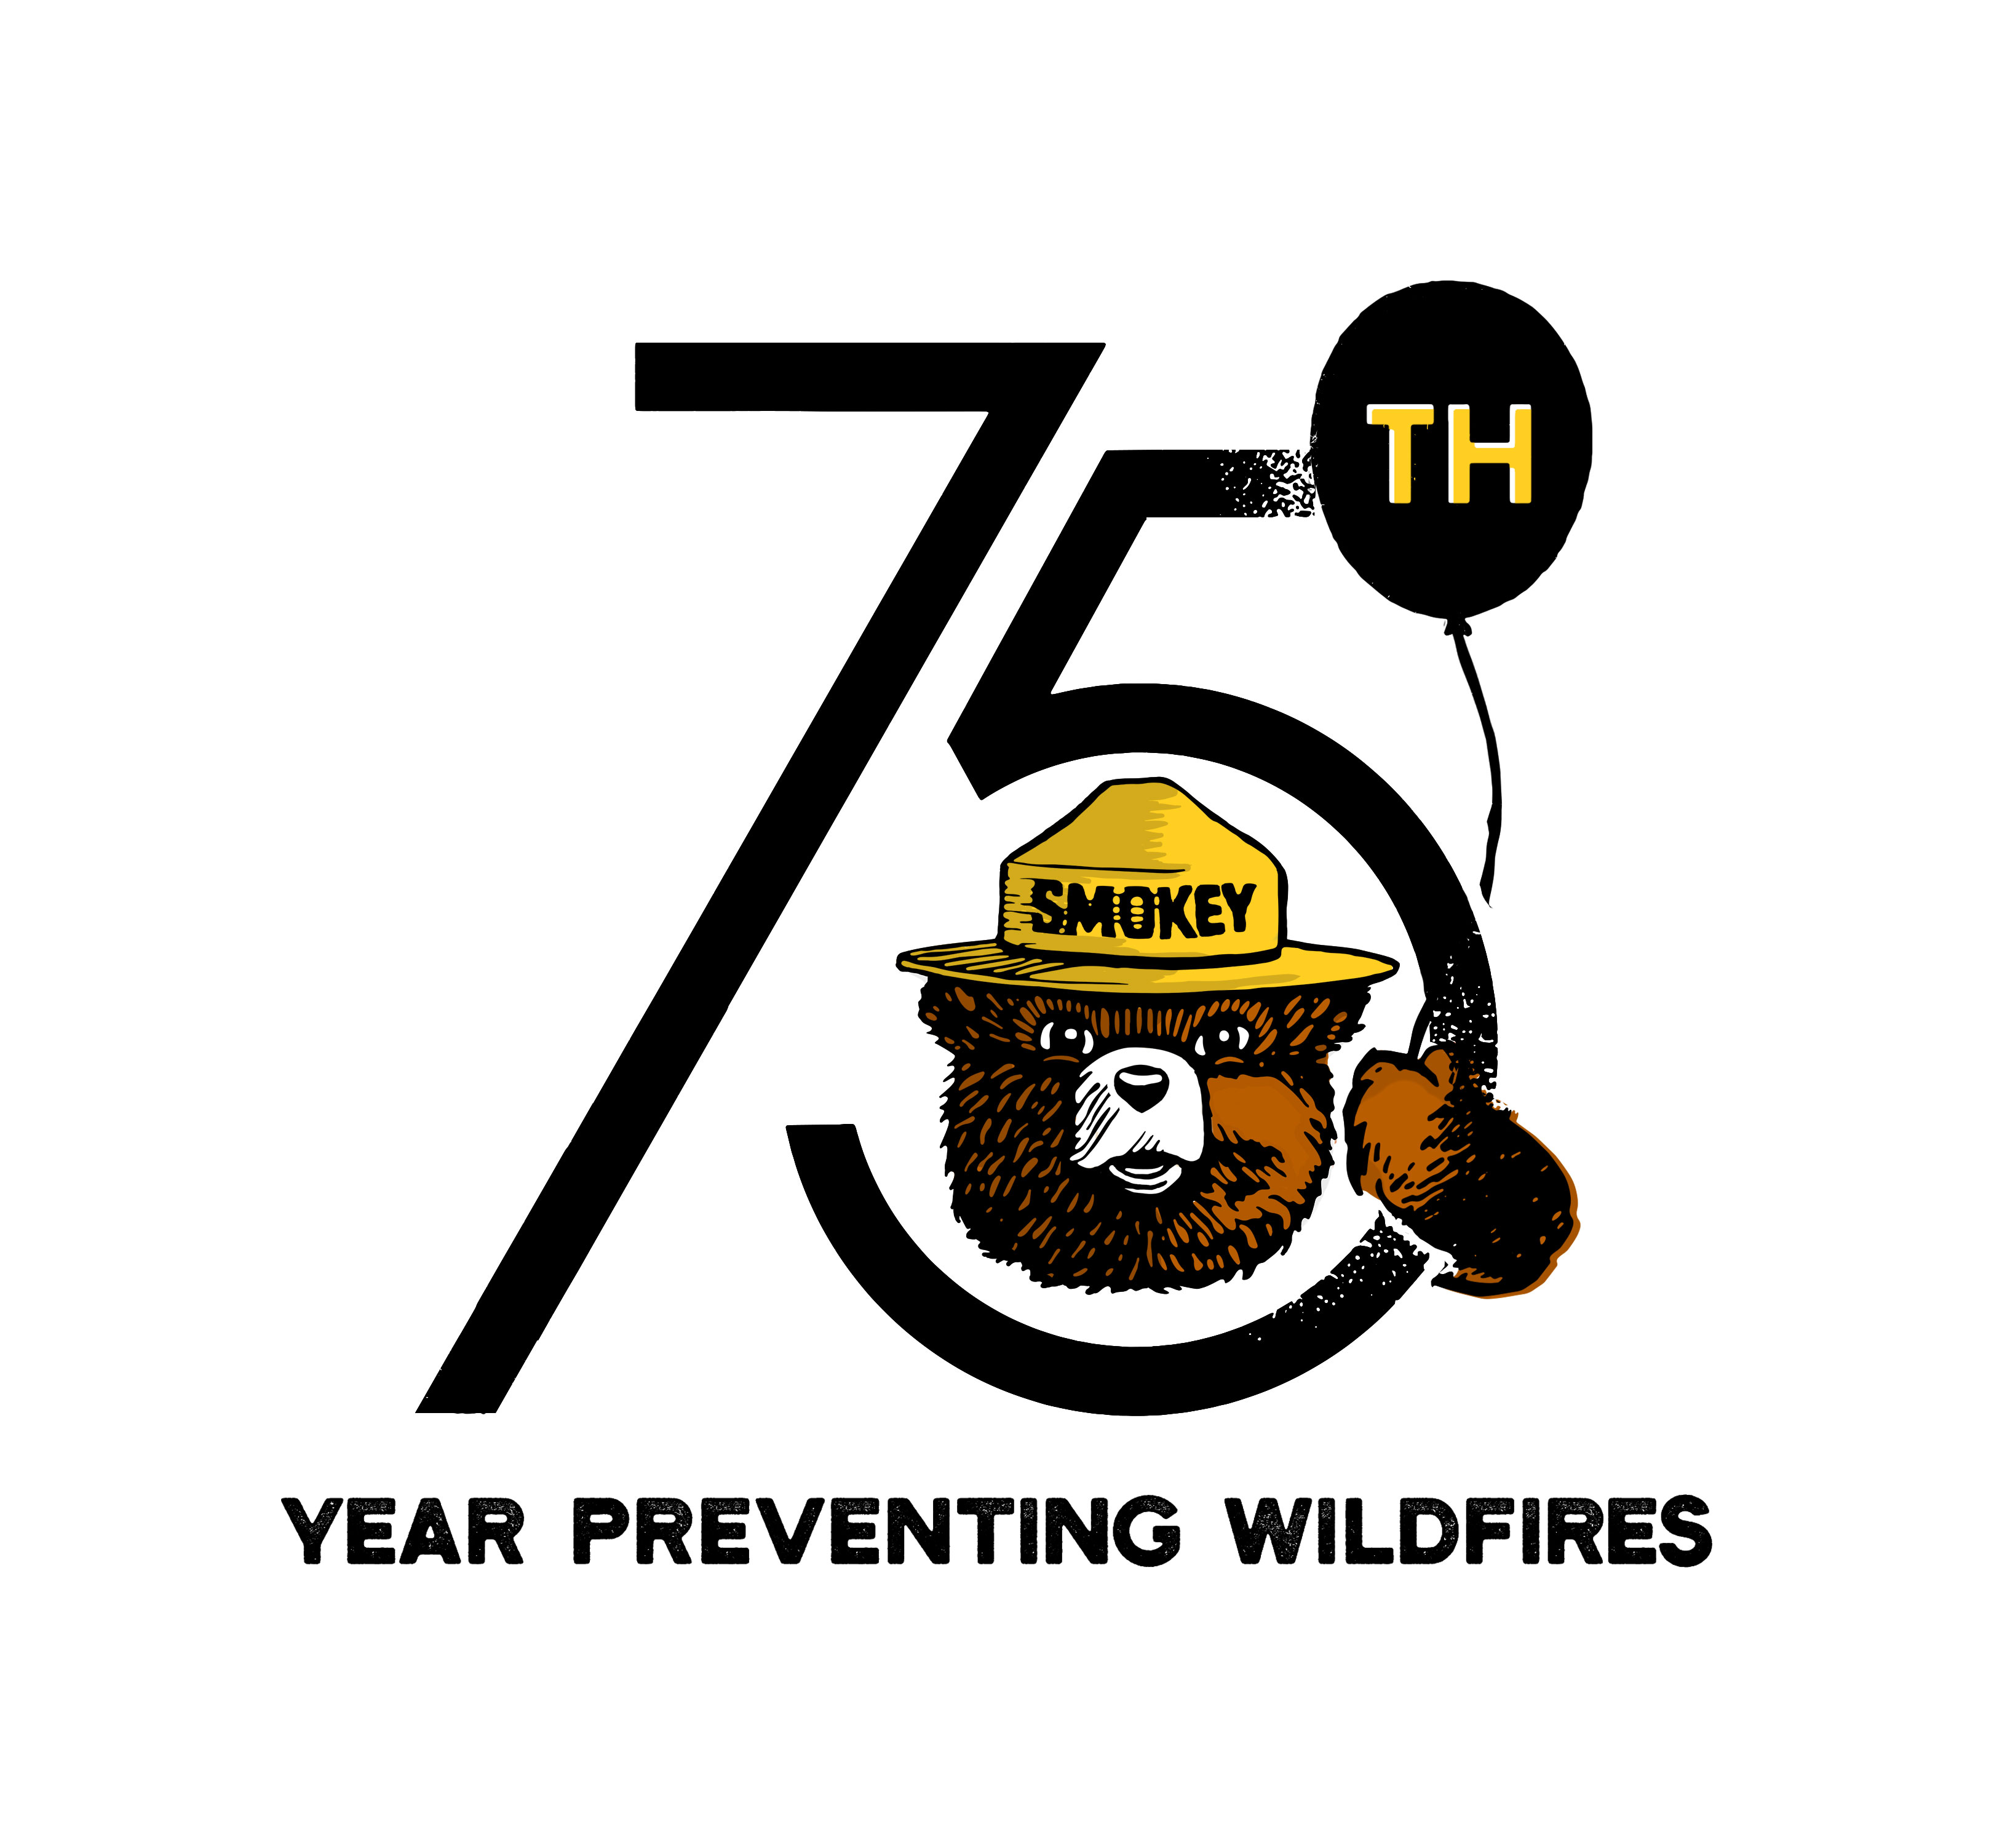 Smokey 75th Anniversary